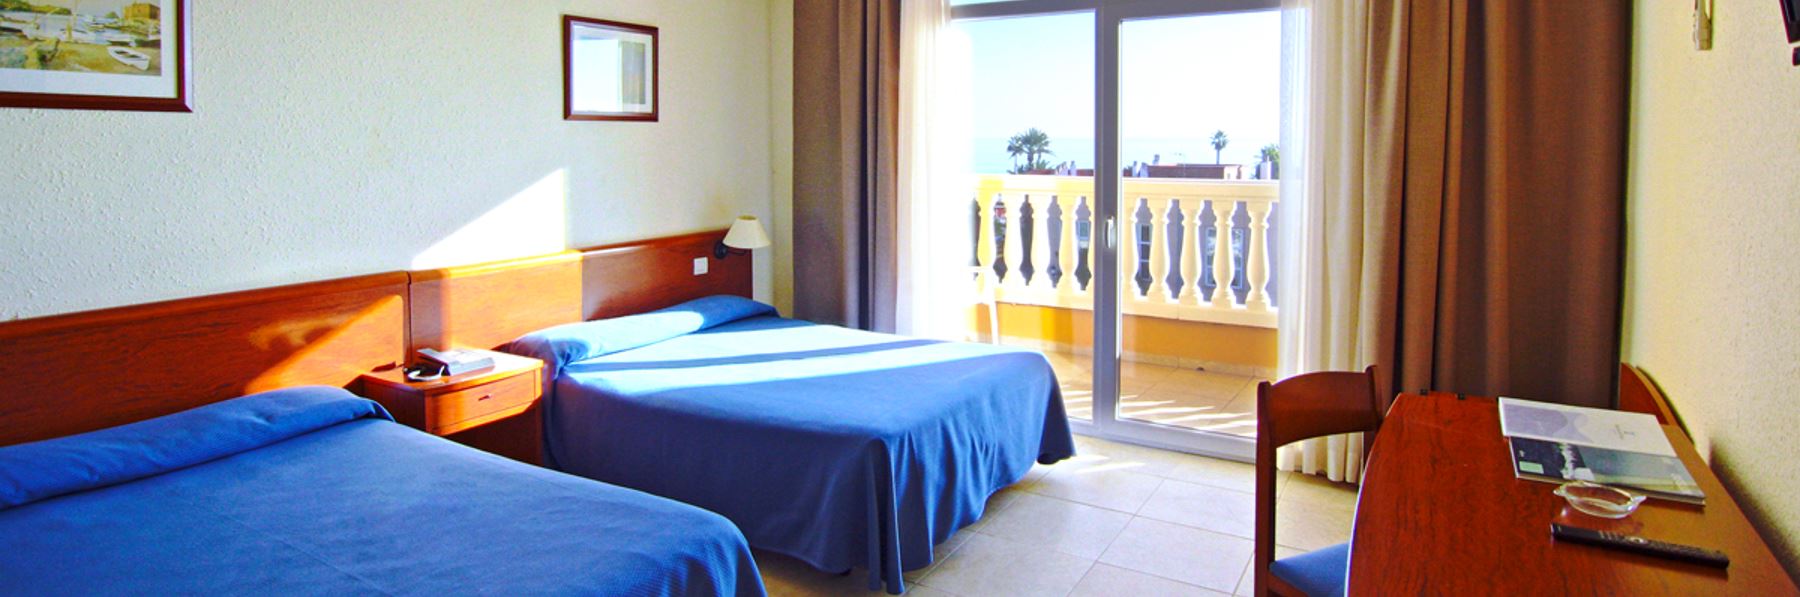 Oferta Hotel Del golf Playa en Castellón con venta anticipada (Grau De Castello - CASTELLON/CASTELLO)